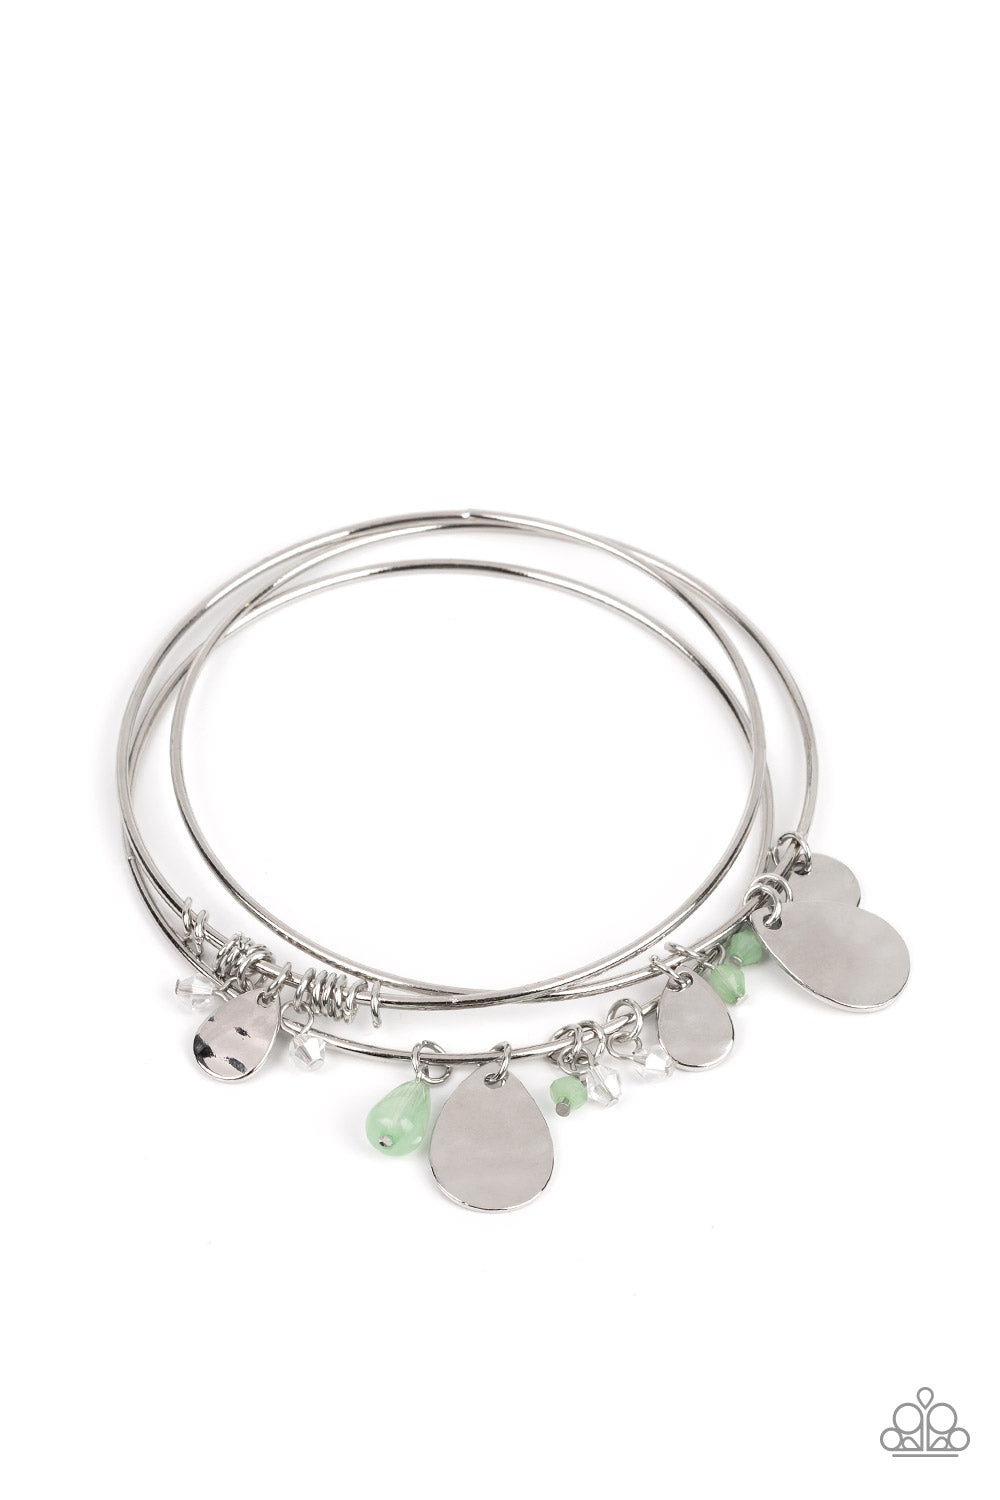 Secret Paradise Paparazzi Accessories Bracelets - Green